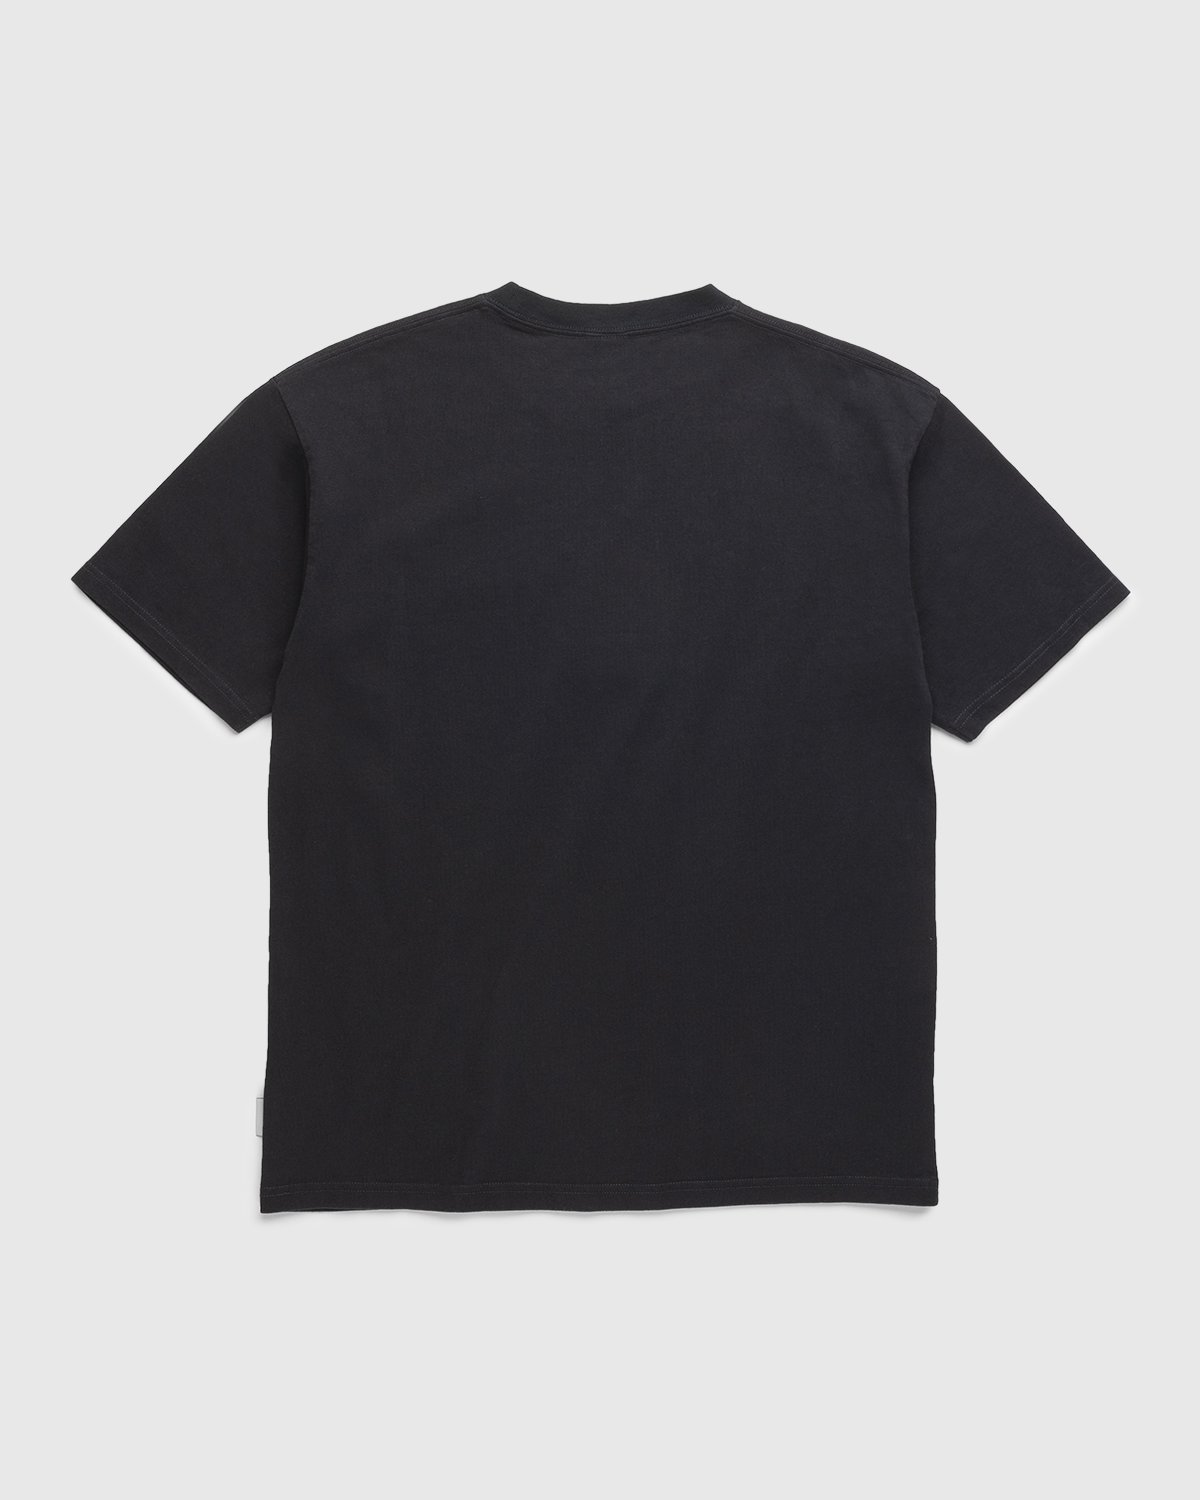 Highsnobiety - Heavy Logo Staples T-Shirt Black - Clothing - Black - Image 2